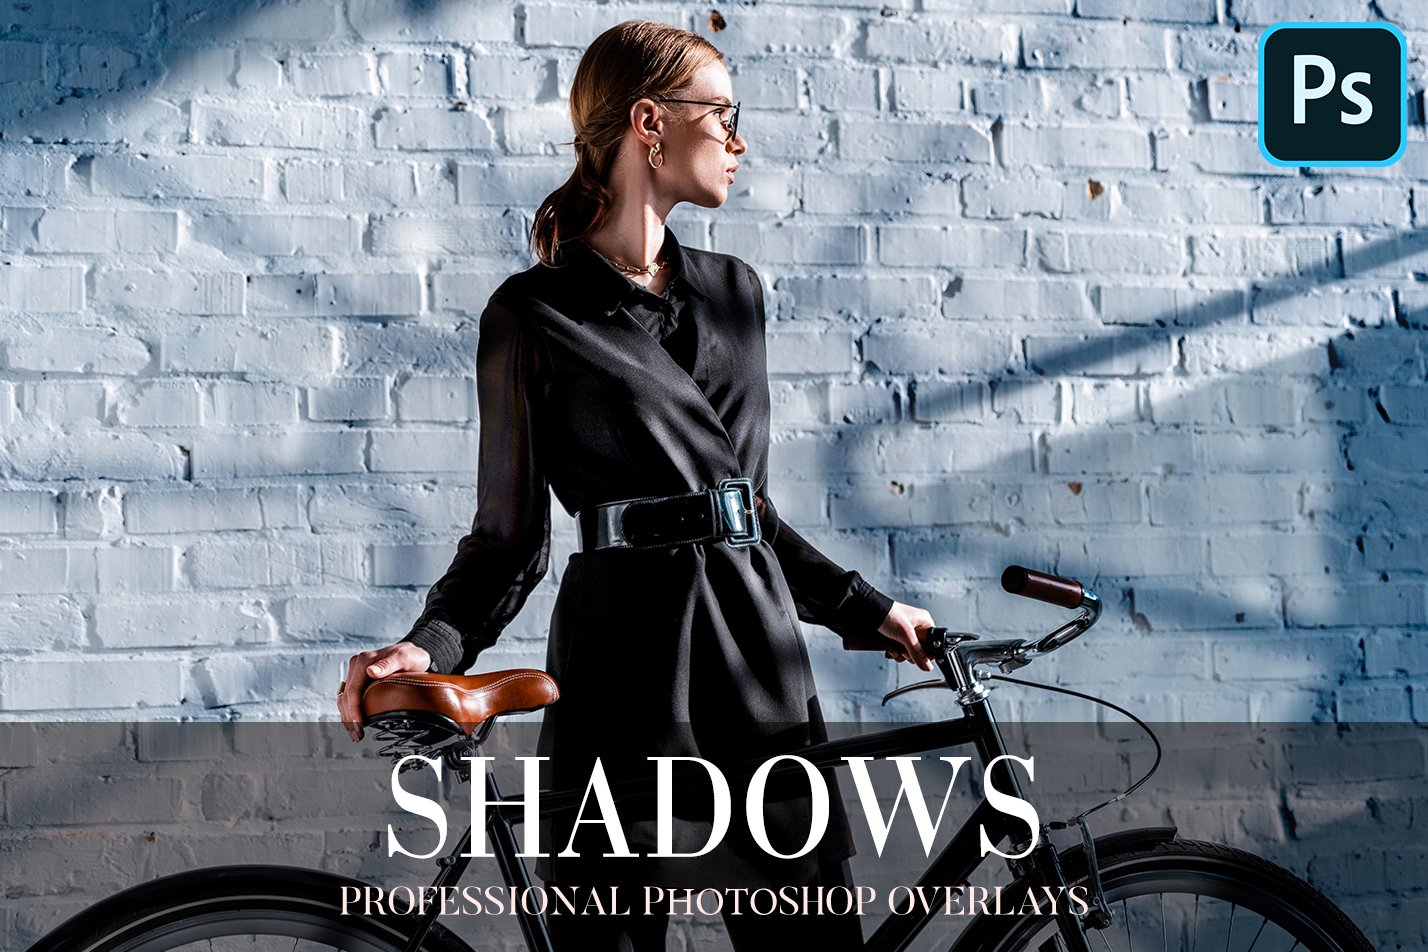 Shadows Overlays Photoshopcover image.